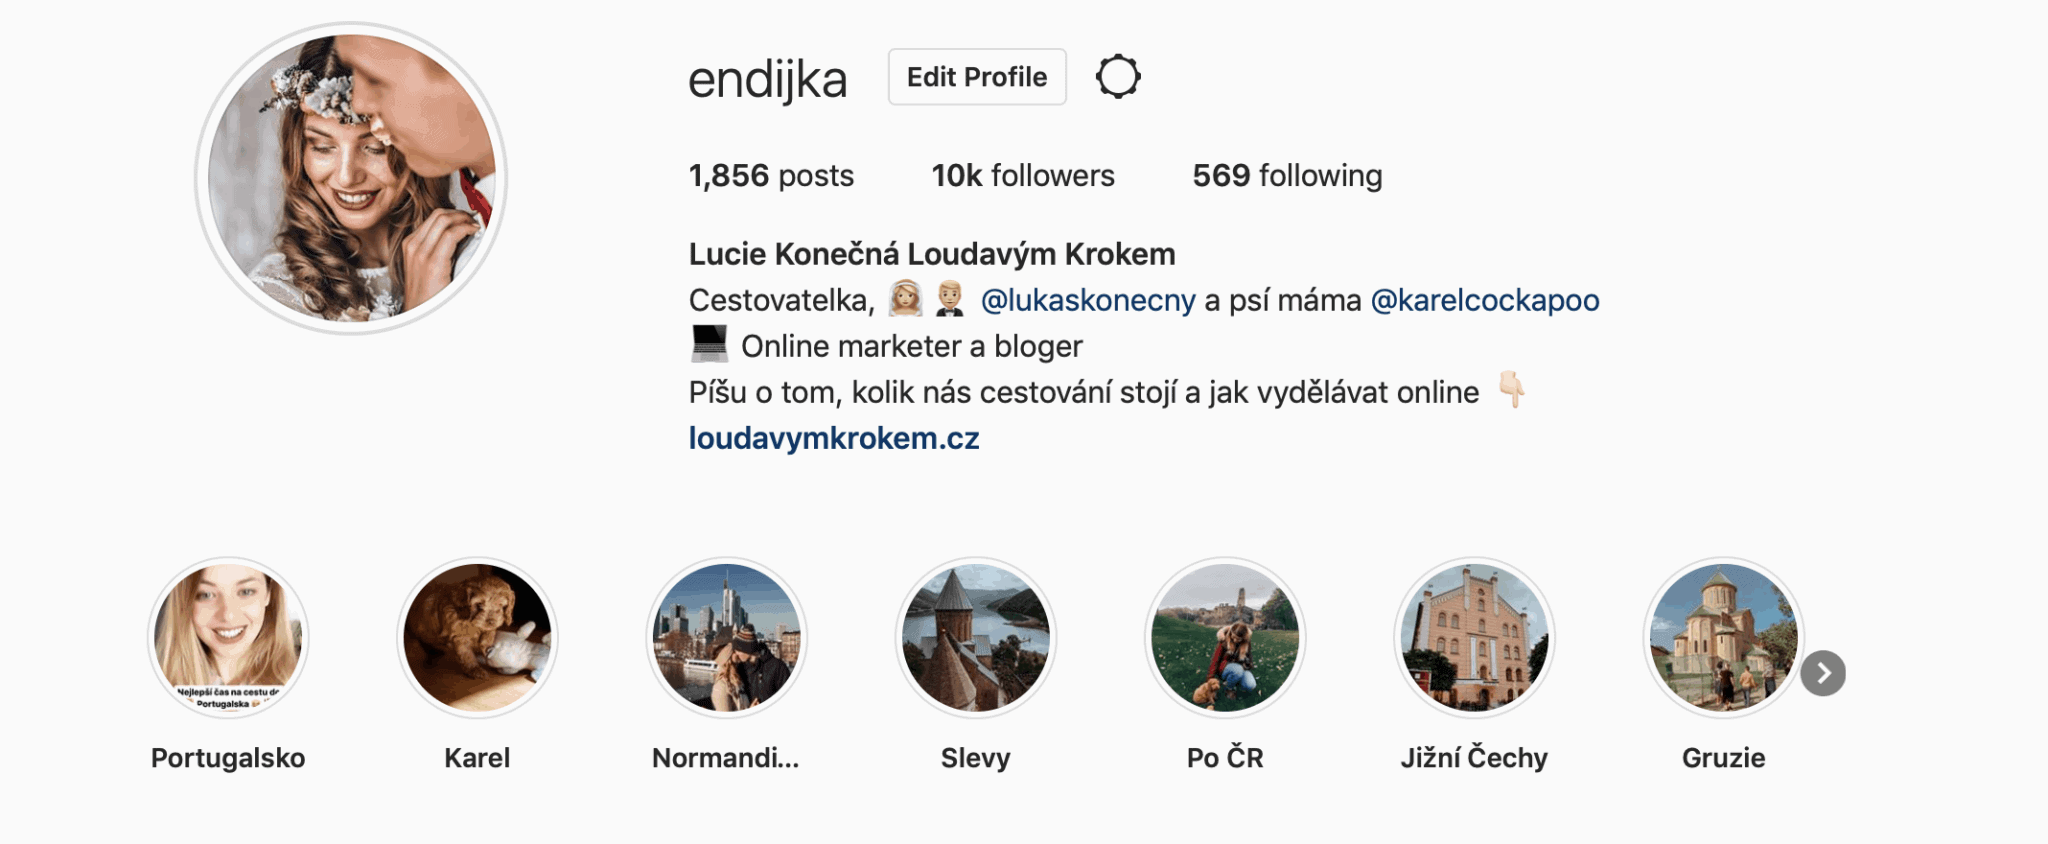 Mój profil na Instagramie 🙂 Możesz mnie śledzić tutaj